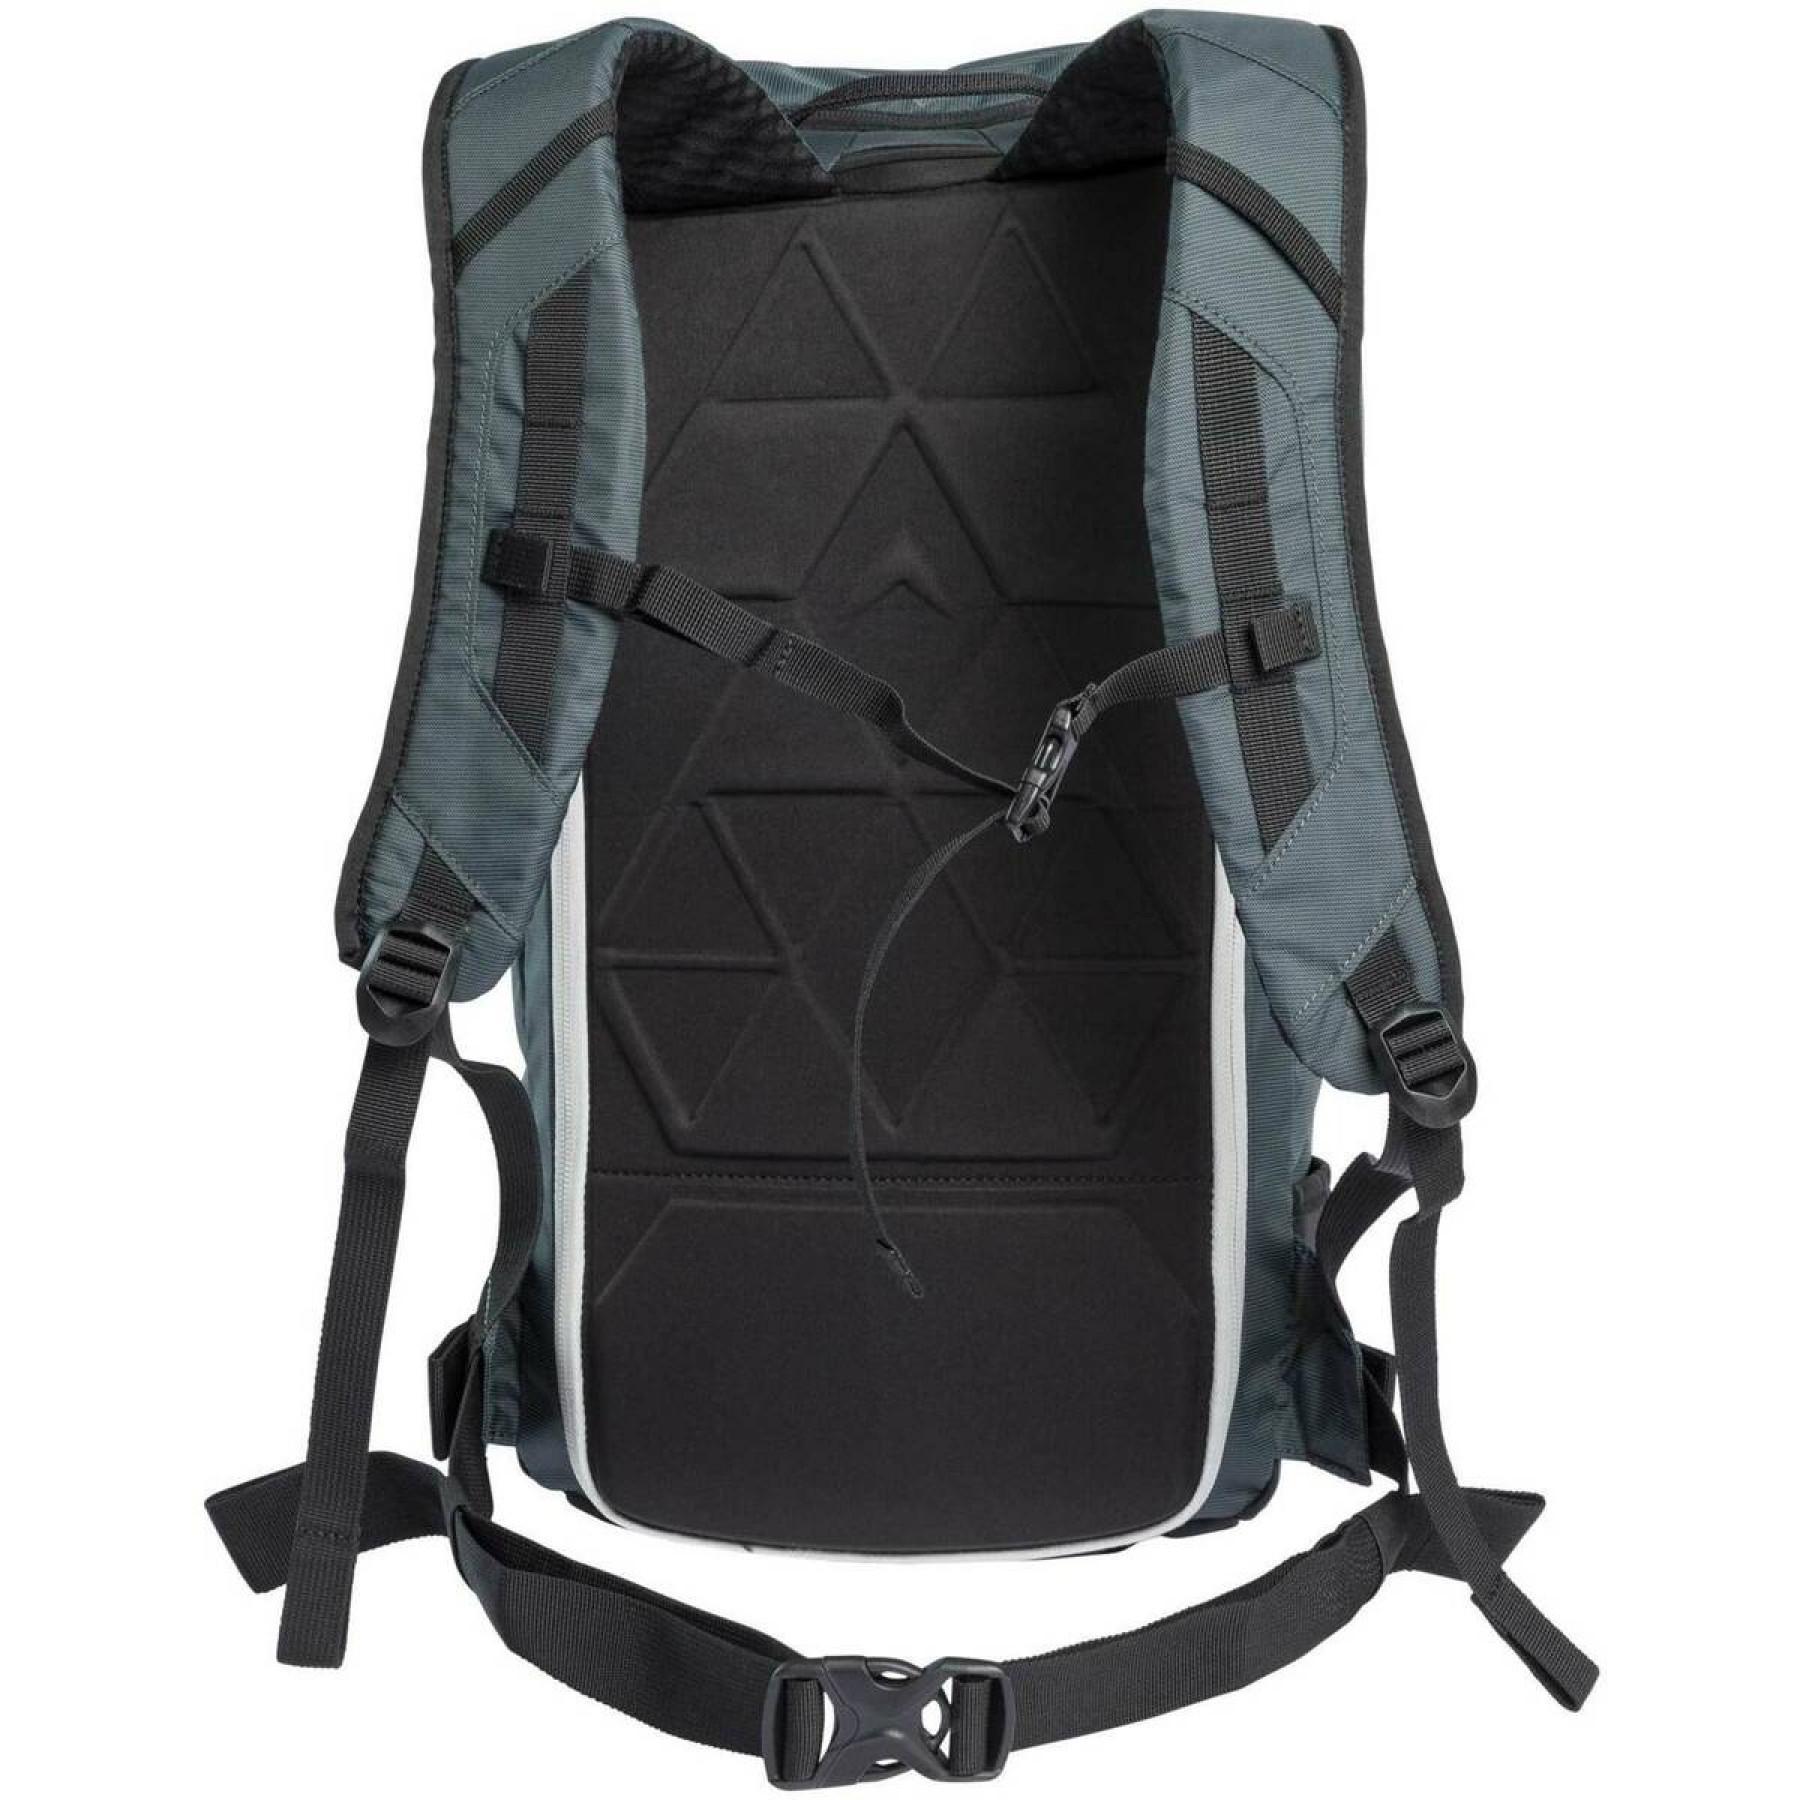 Backpack Dynastar m-22 light